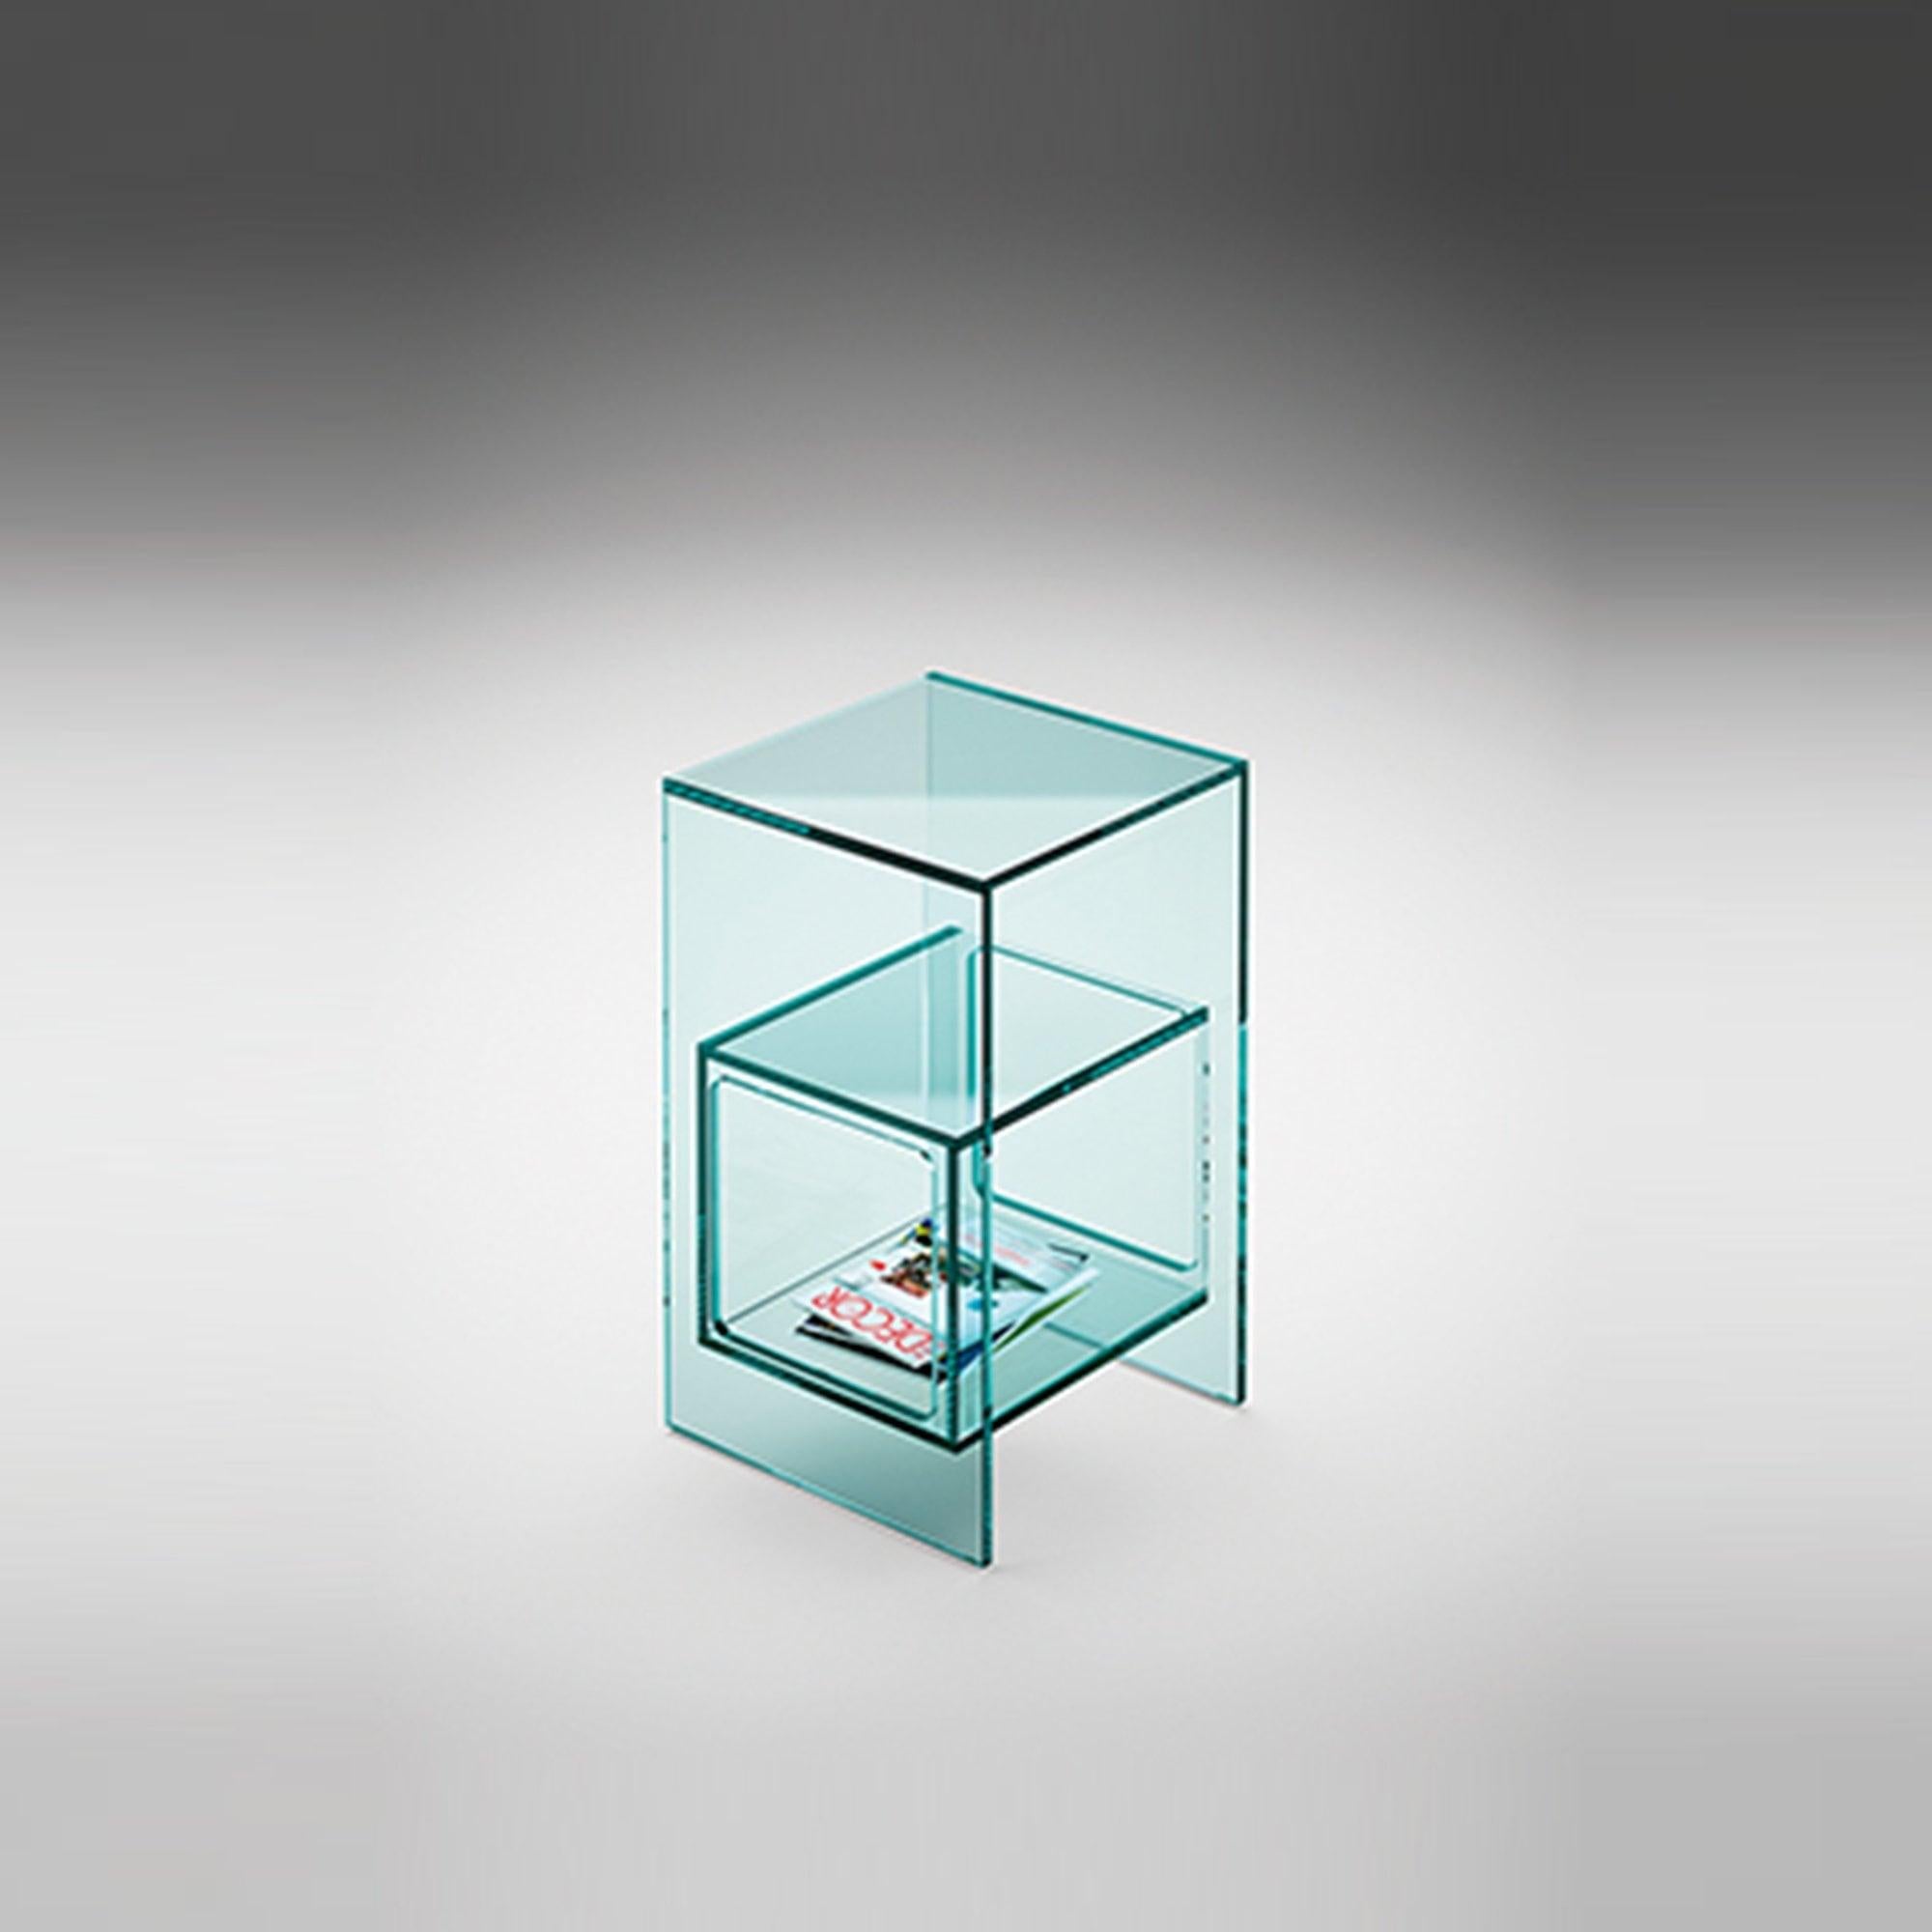 Couchtisch mit kubischem Innenfach aus 10 mm dickem Glas. Erhältlich in verschiedenen Ausführungen. Transparente Glasstruktur und Würfel.
 